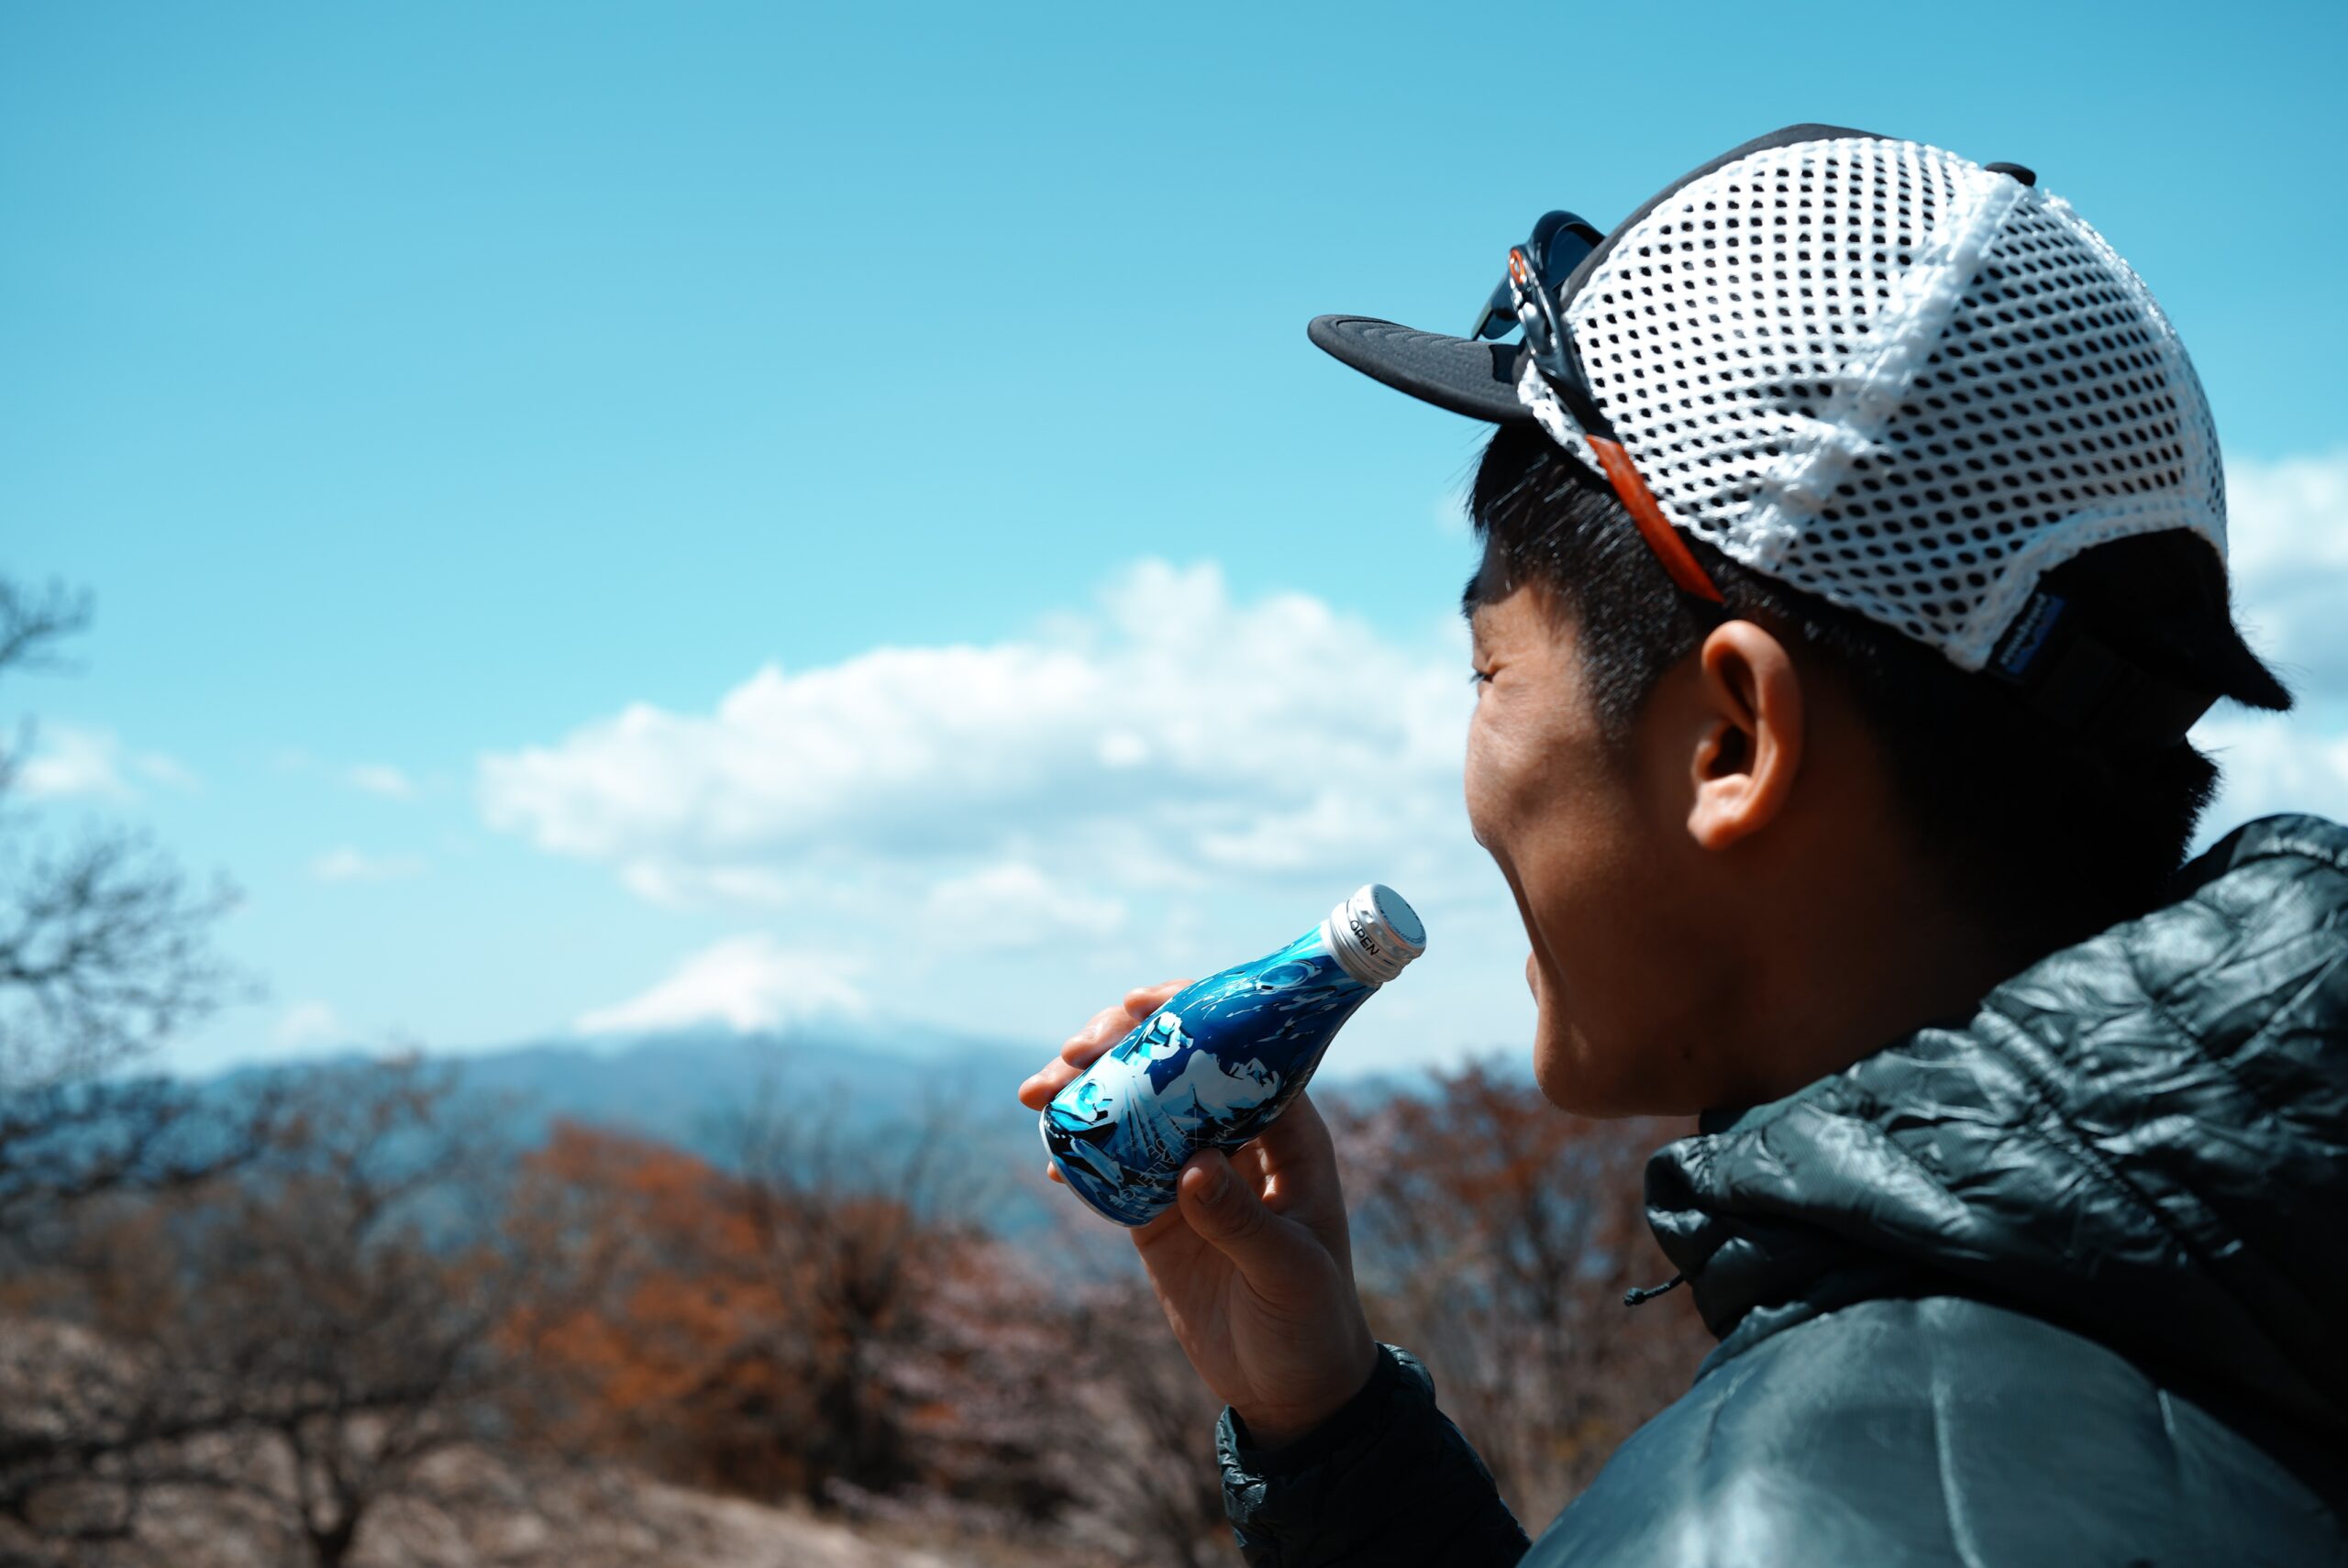 アウトドア、家飲みに最適な180mlの画期的デザインの日本酒ボトル缶、​クラウドファンディングプロジェクトで200万円突破！2021/5/30で募集終了！